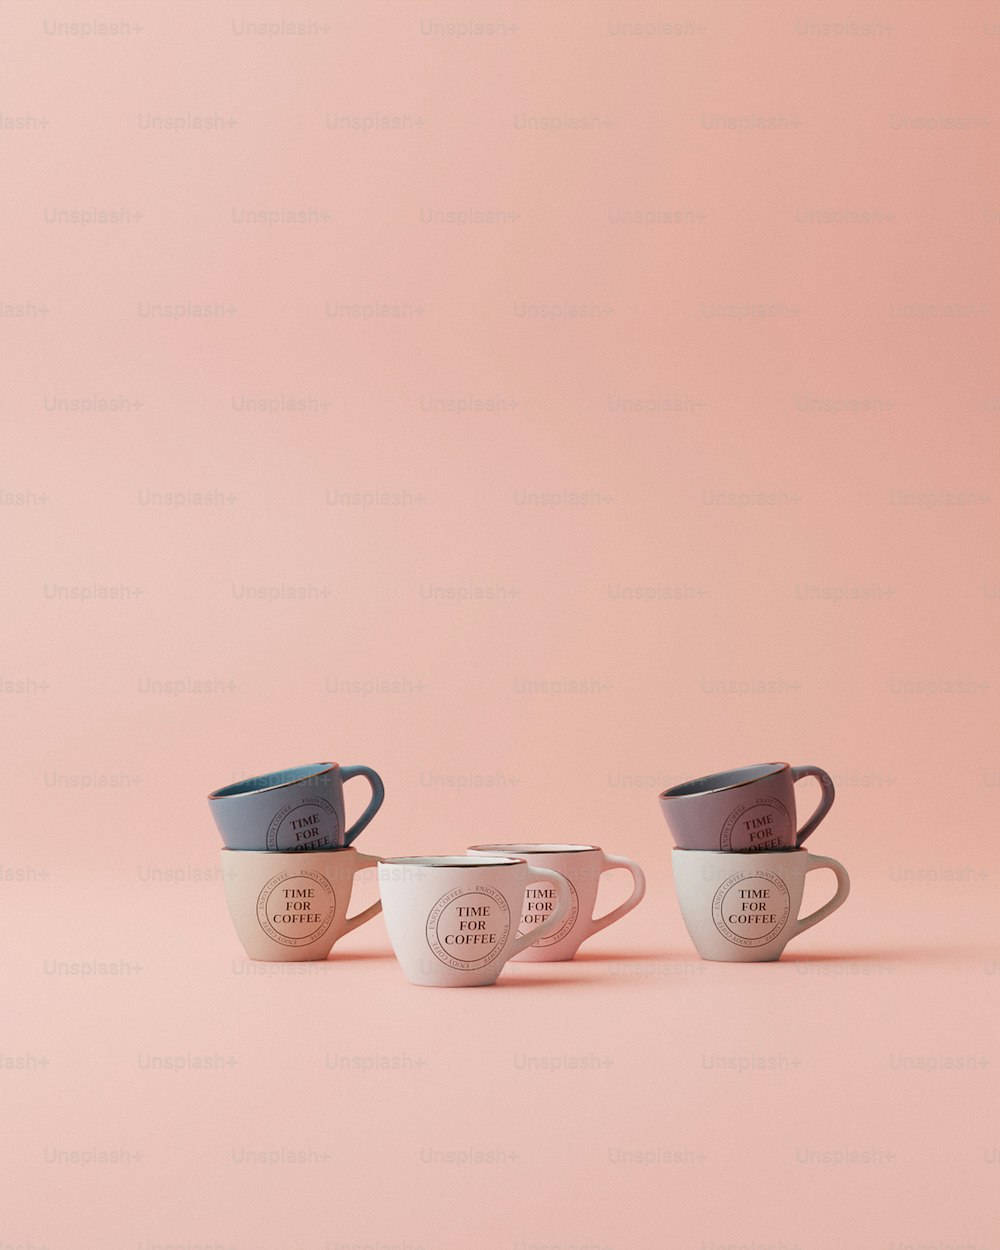 ピンクの背景に3つのコーヒーカップが並んで座っている